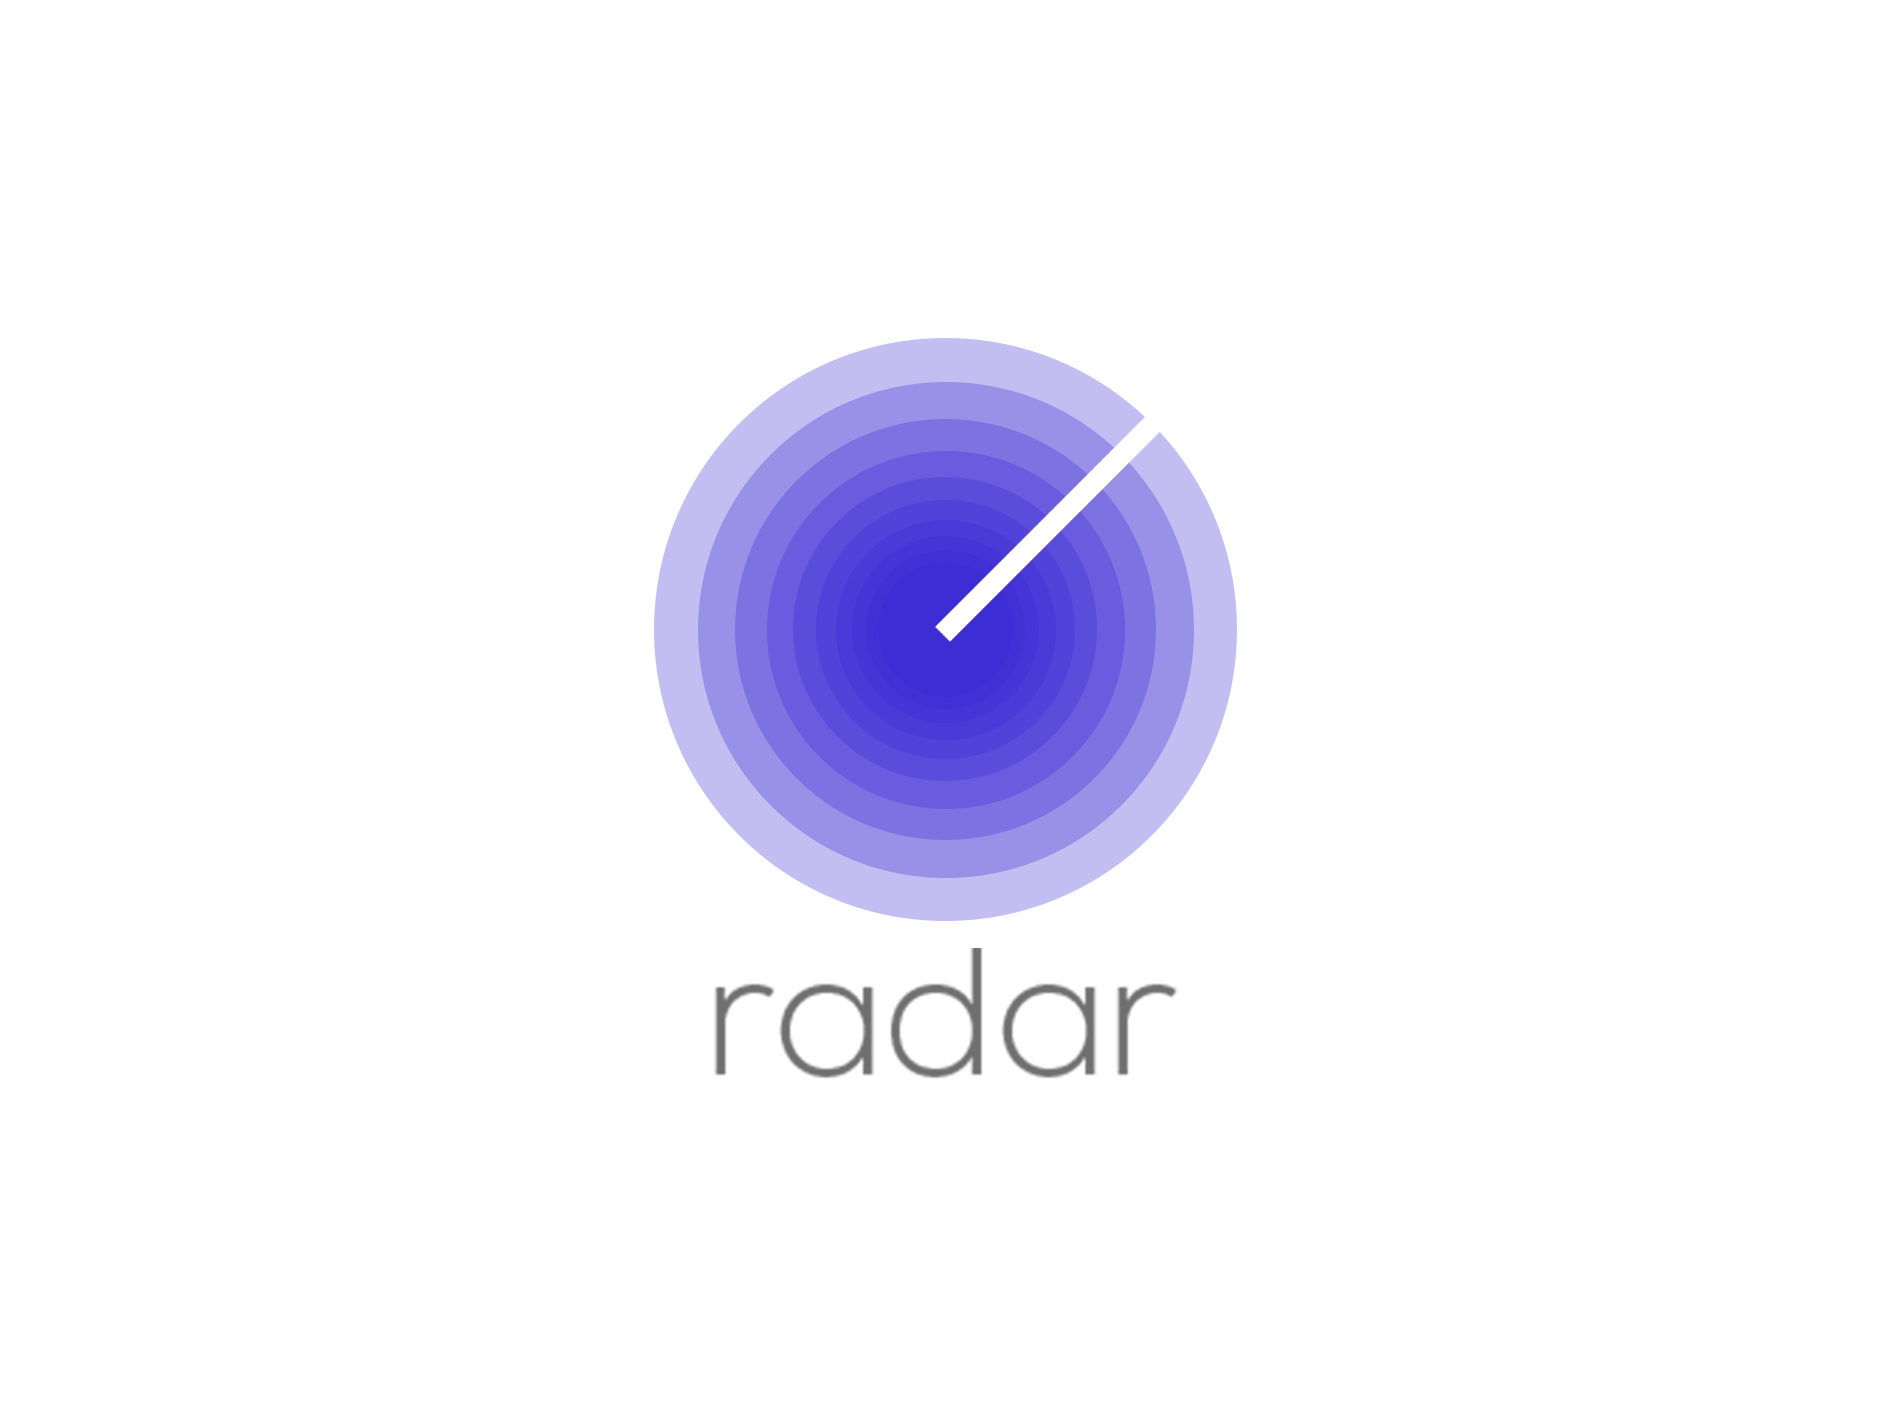 Blue Radar Logo - Radar Logo Redesign Using Adobe Photohop